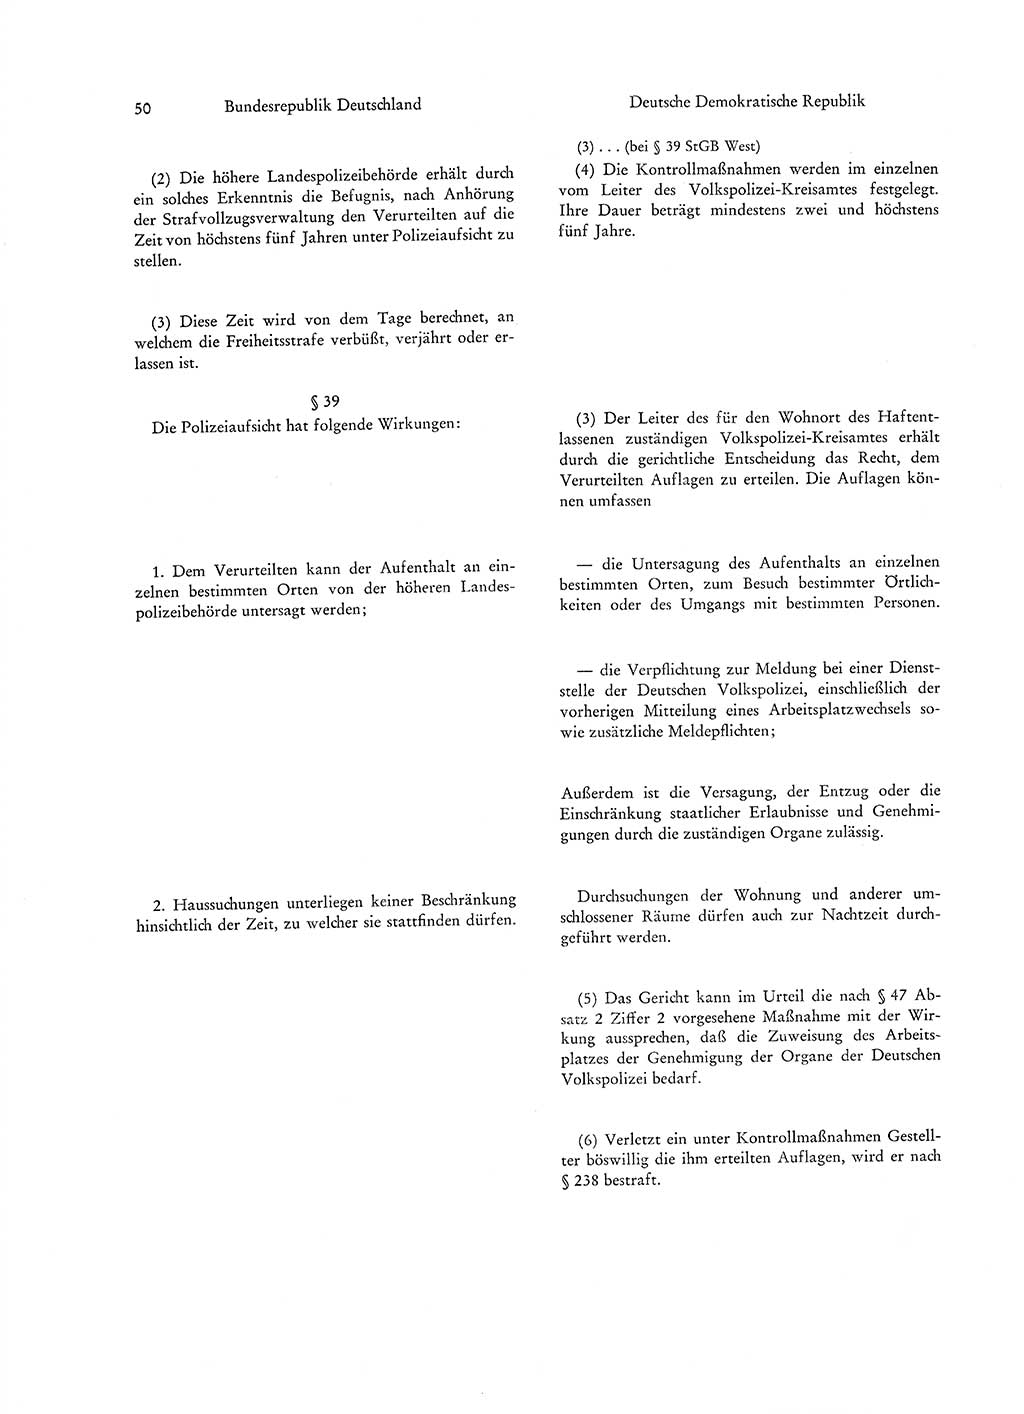 Strafgesetzgebung in Deutschland [Bundesrepublik Deutschland (BRD) und Deutsche Demokratische Republik (DDR)] 1972, Seite 50 (Str.-Ges. Dtl. StGB BRD DDR 1972, S. 50)